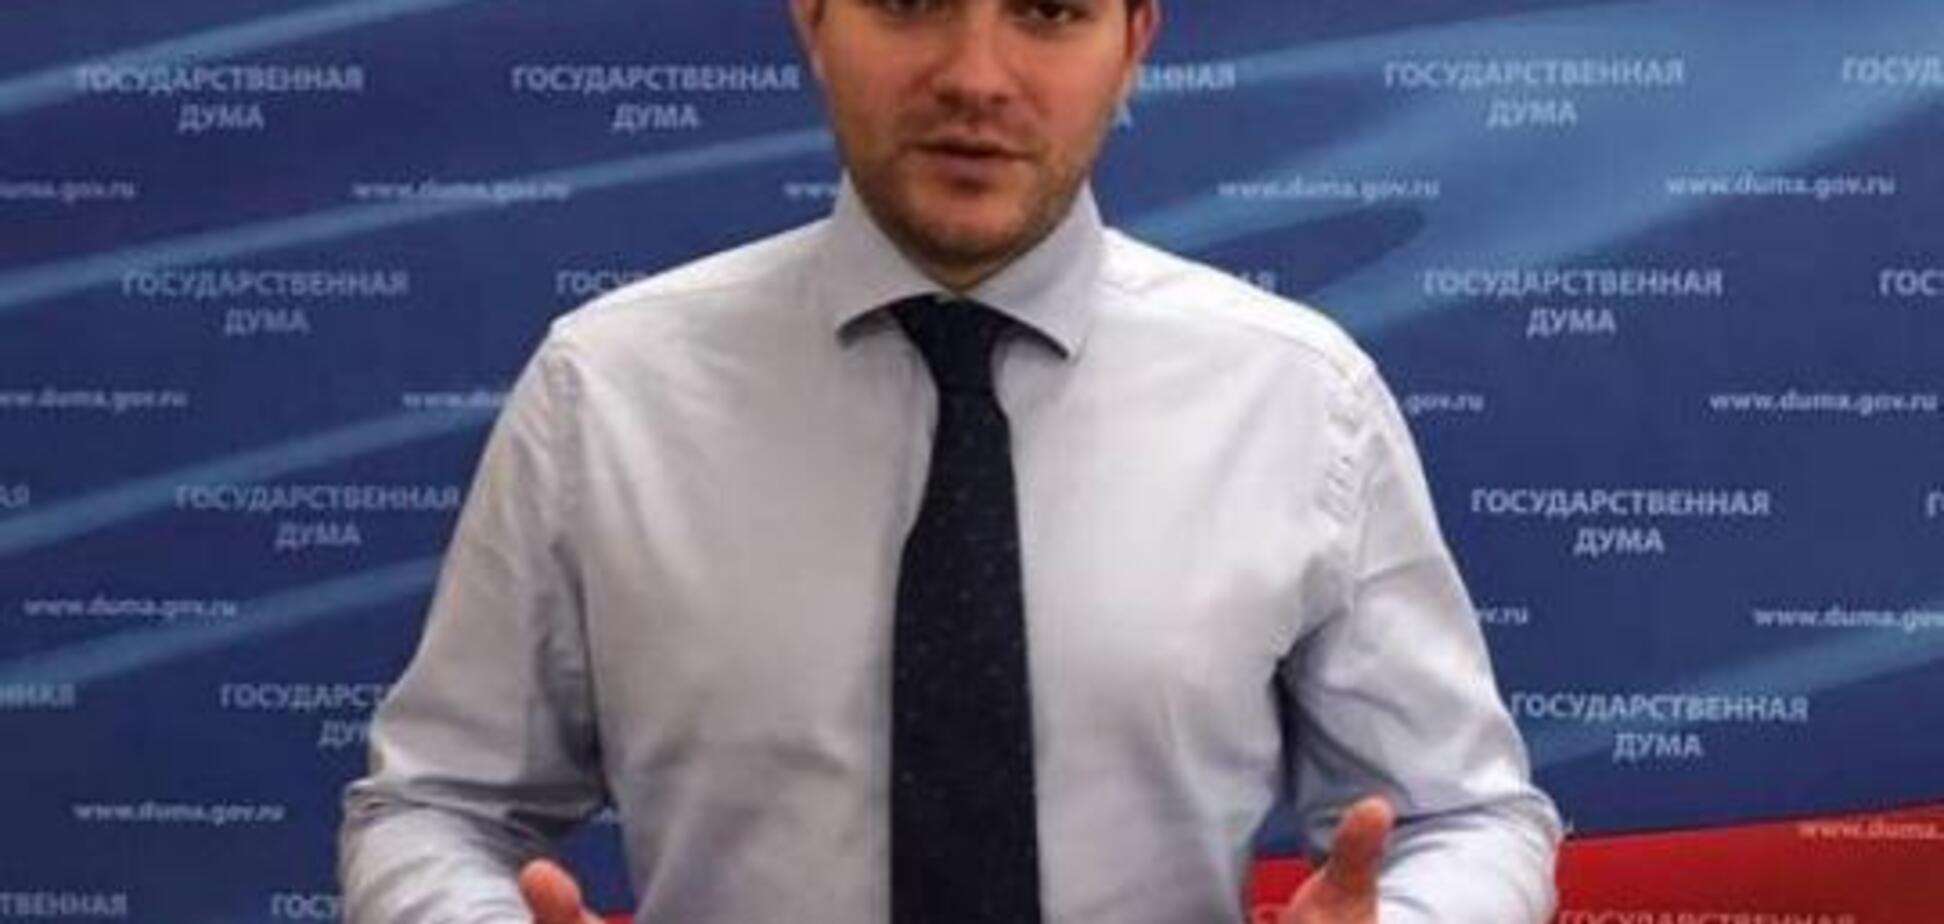 В ''ДНР'' заявили о задержании спонсора сепаратистов и его семьи: что известно